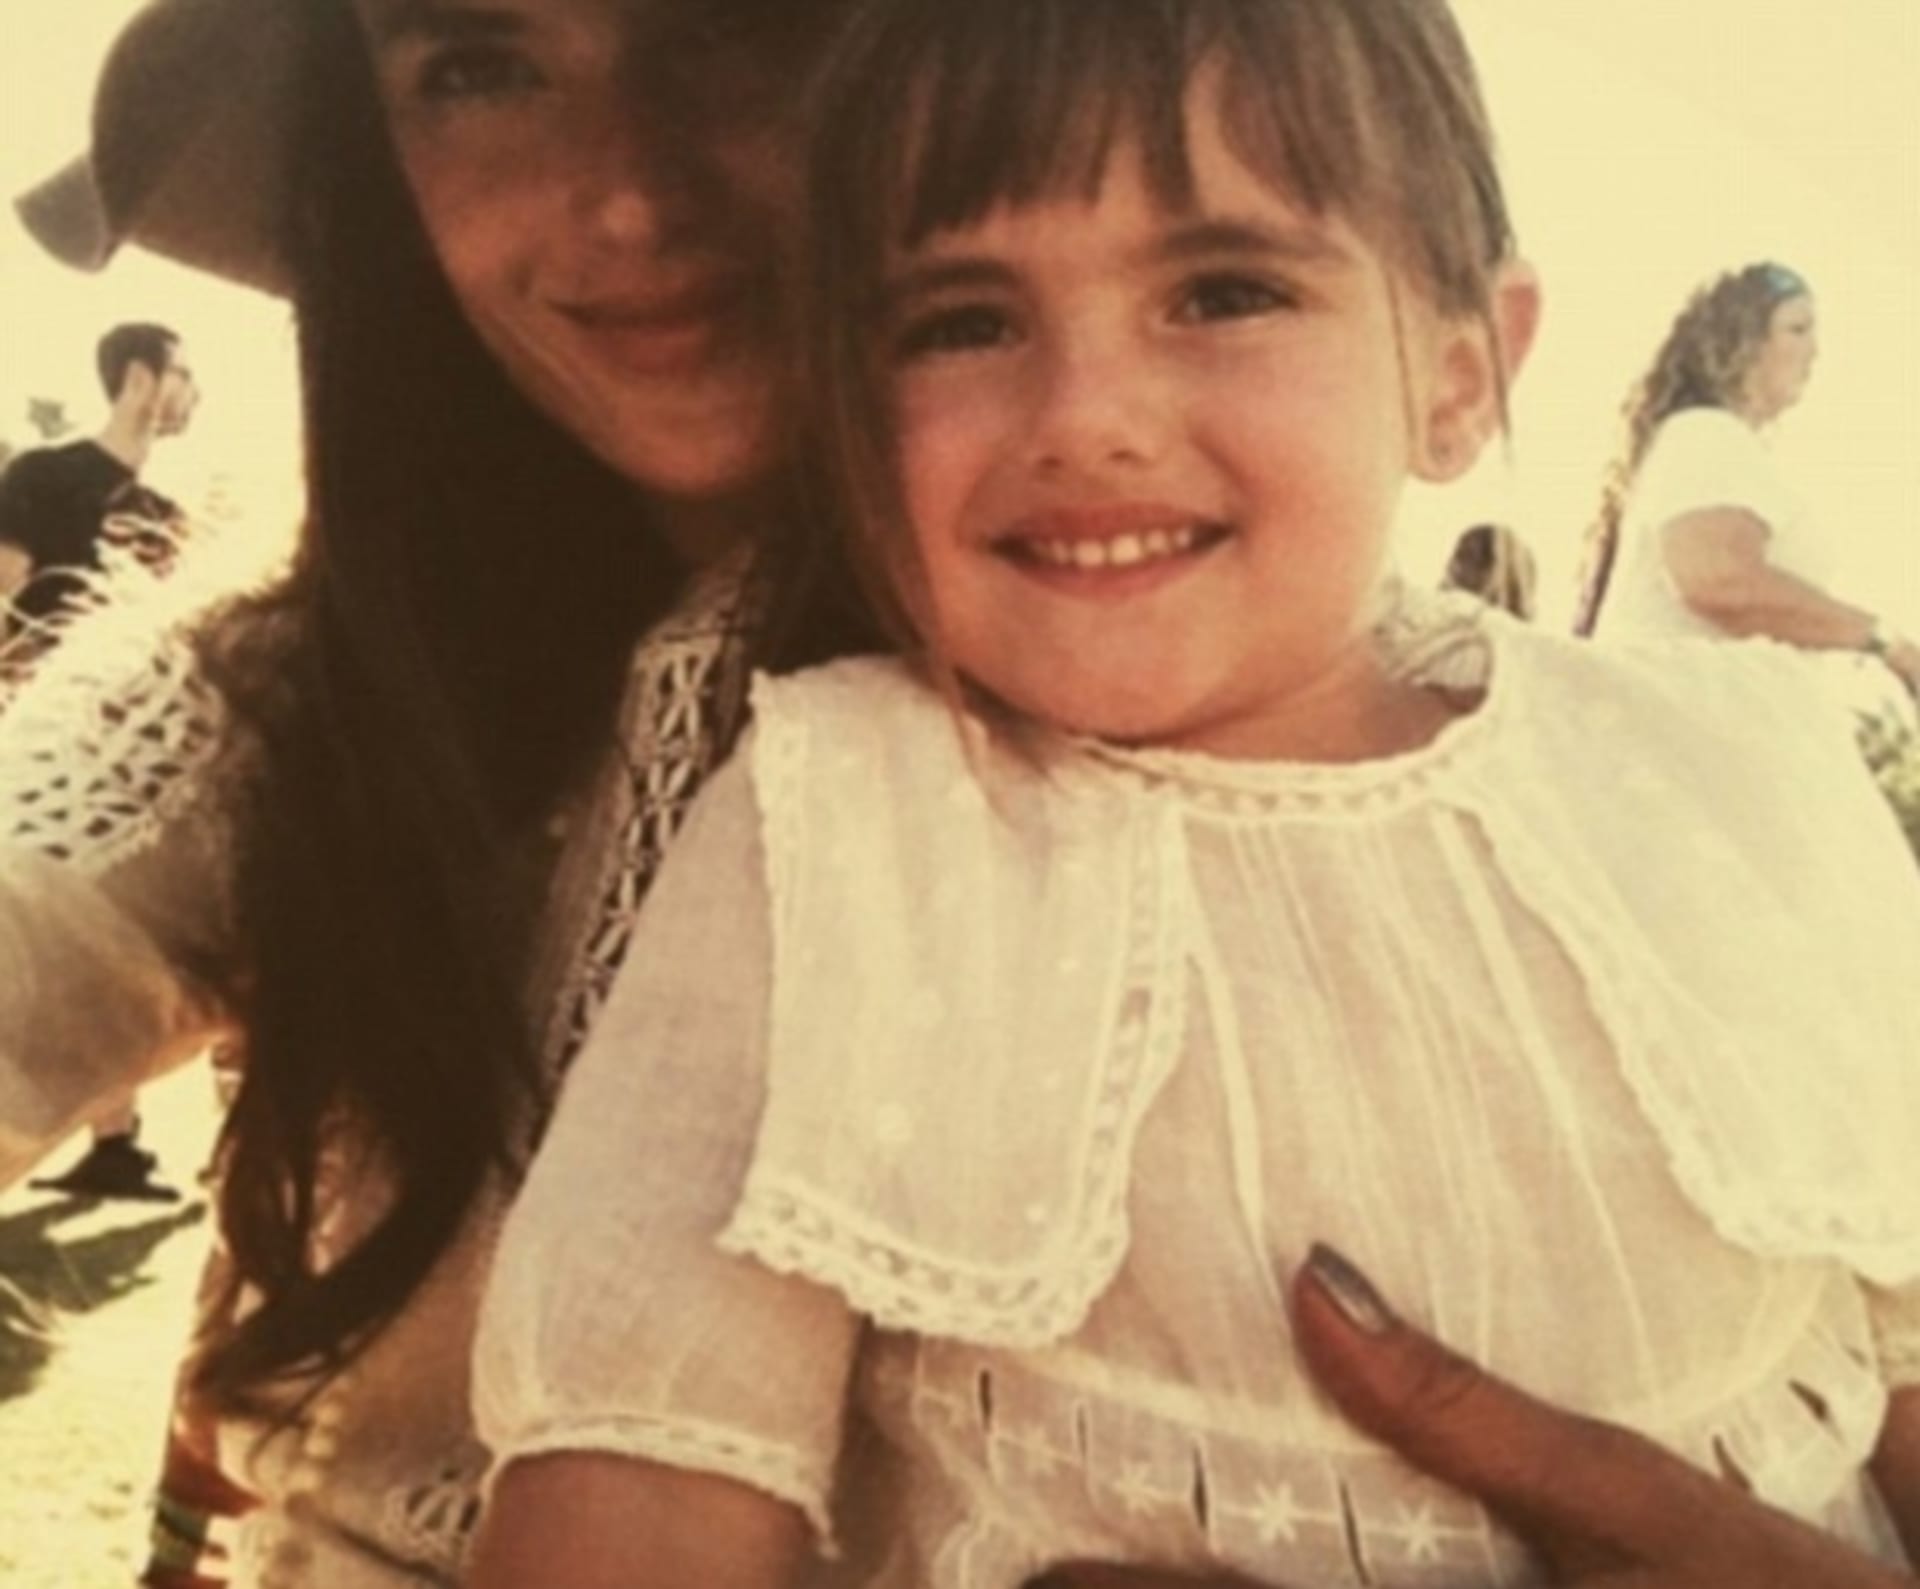 Dcera Anja je stejně krásná jako její maminka Alessandra